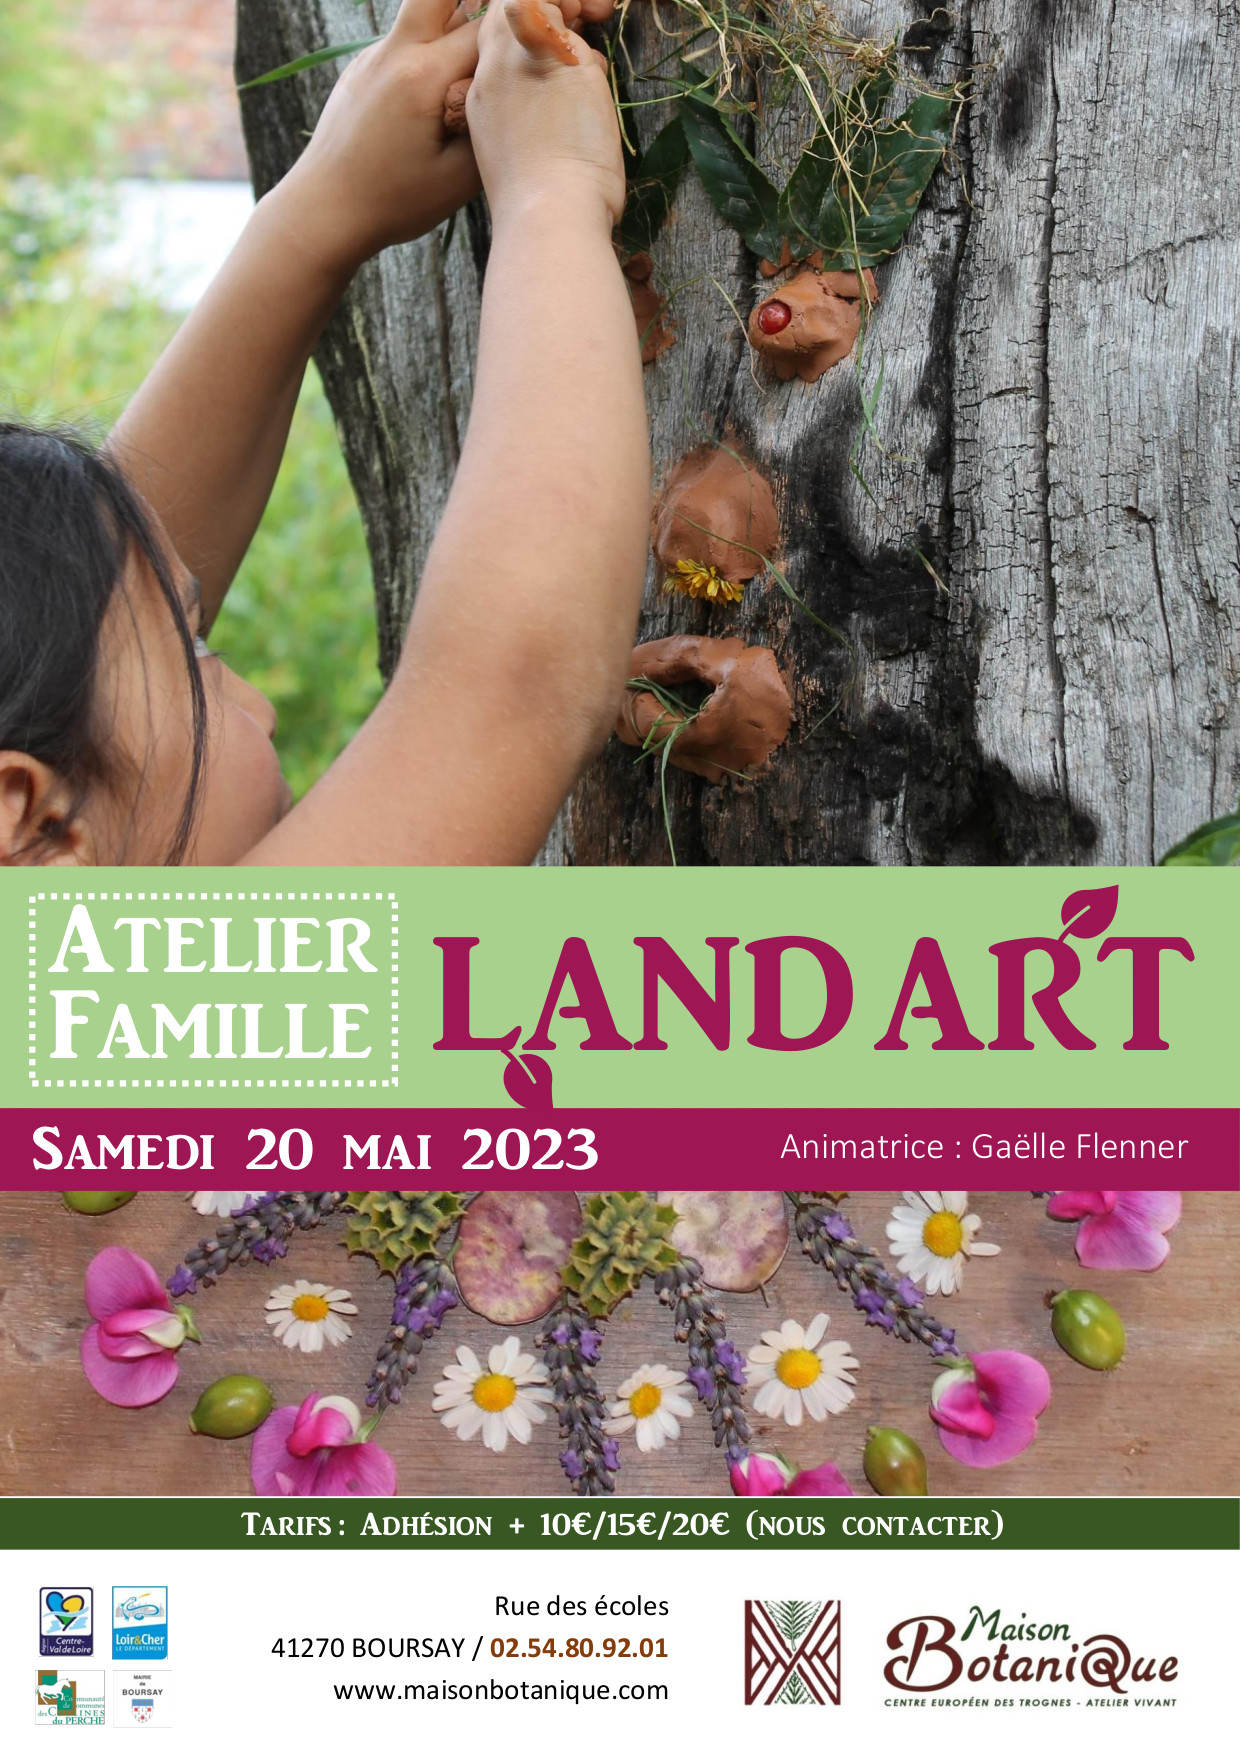 Atelier Famille : Land Art